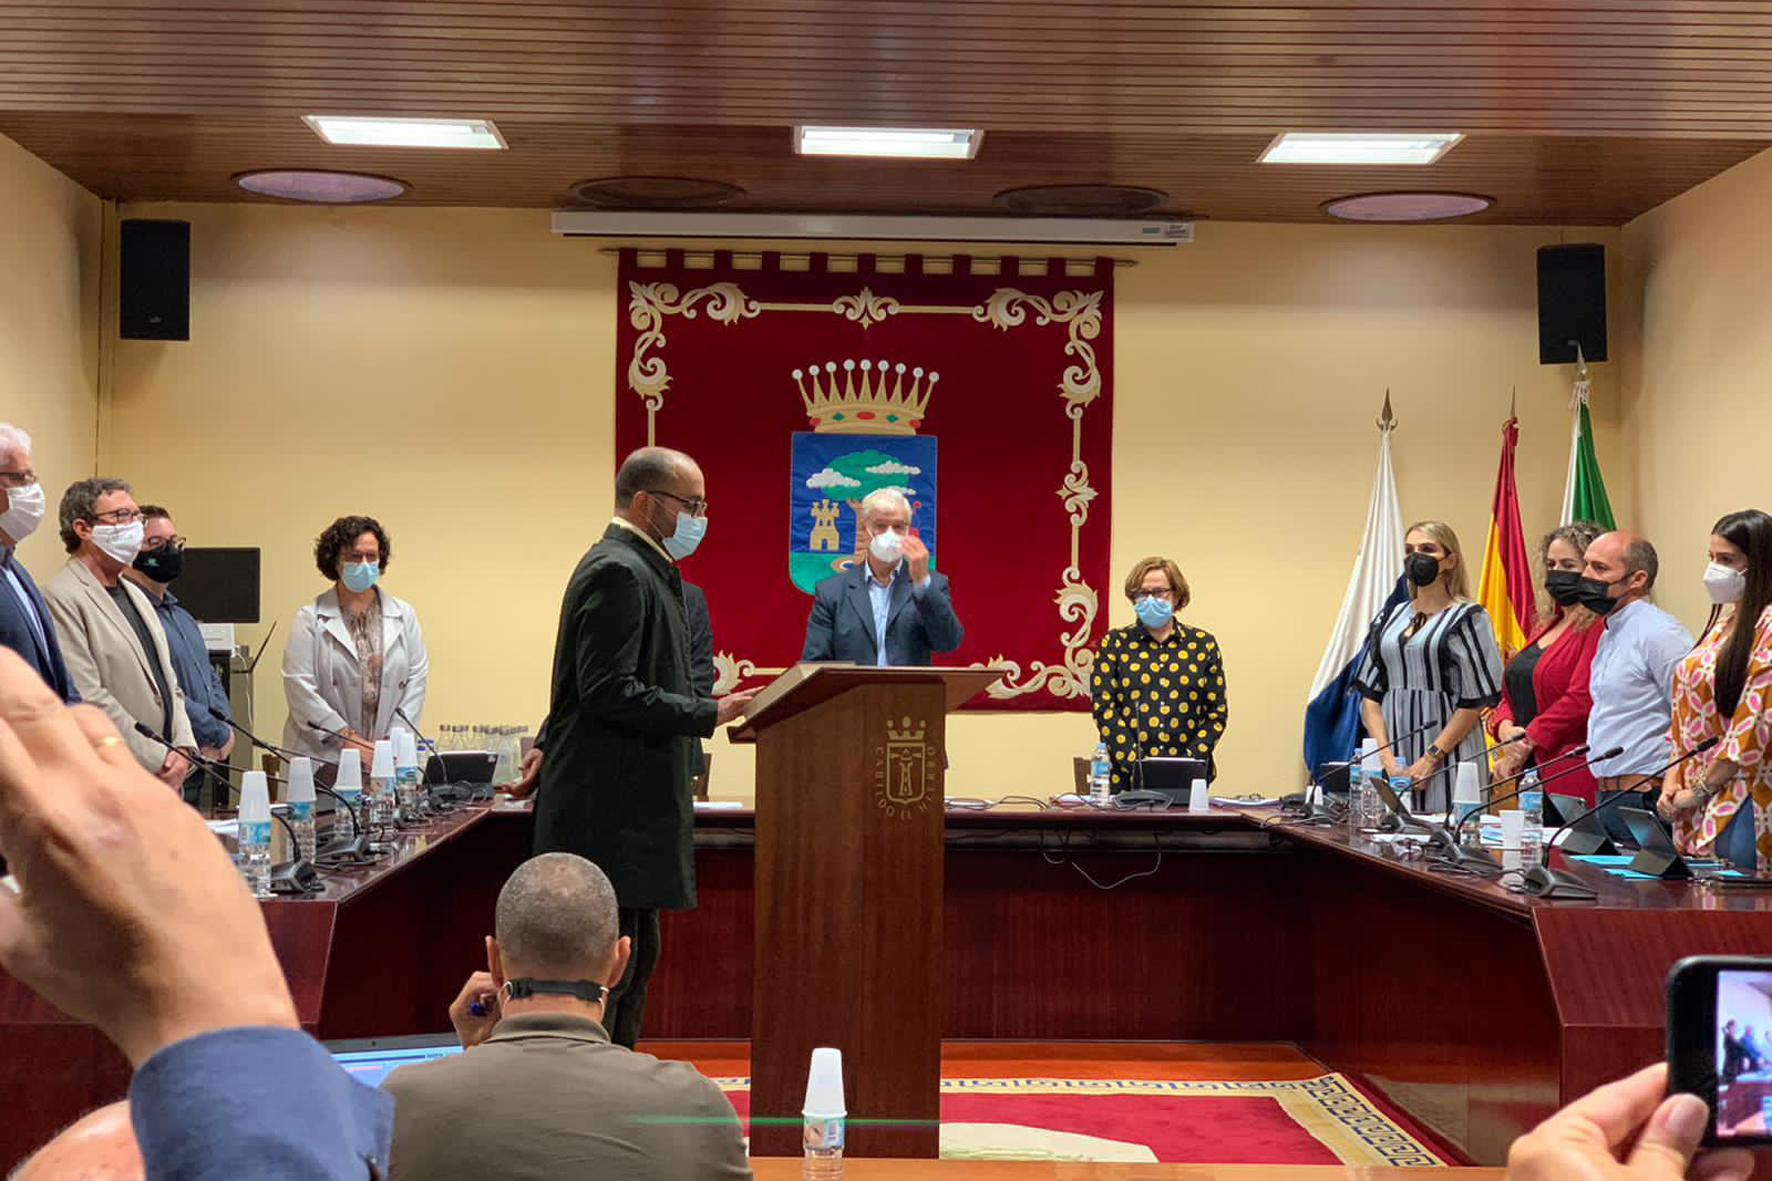 Rubén Acosta toma posesión como nuevo consejero en el Cabildo de El Hierro